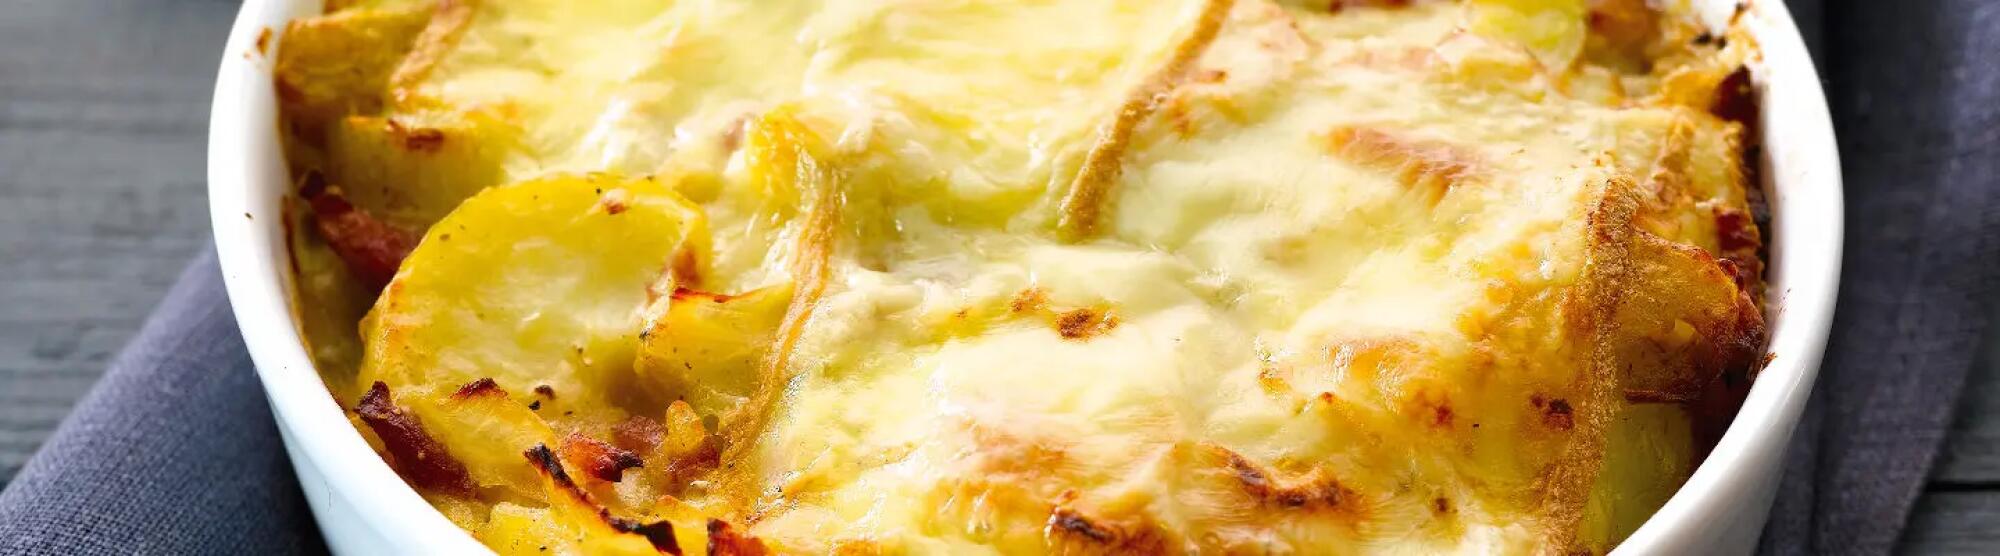 Recette : Tartiflette rapide au fromage à raclette